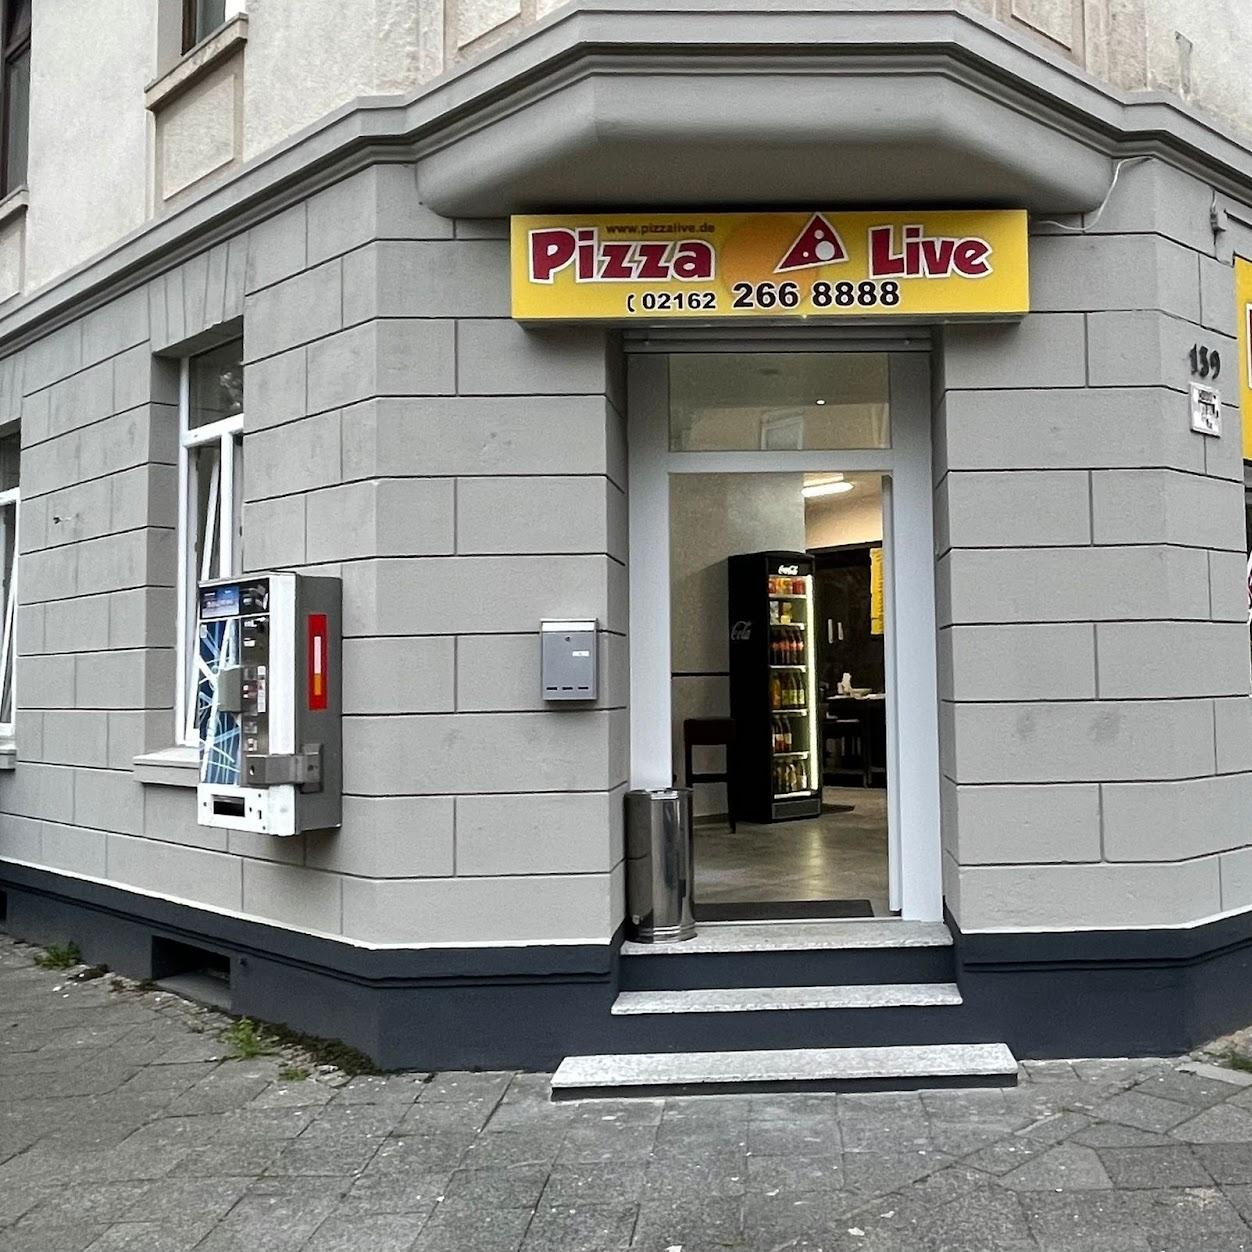 Restaurant "Pizza Live" in Viersen